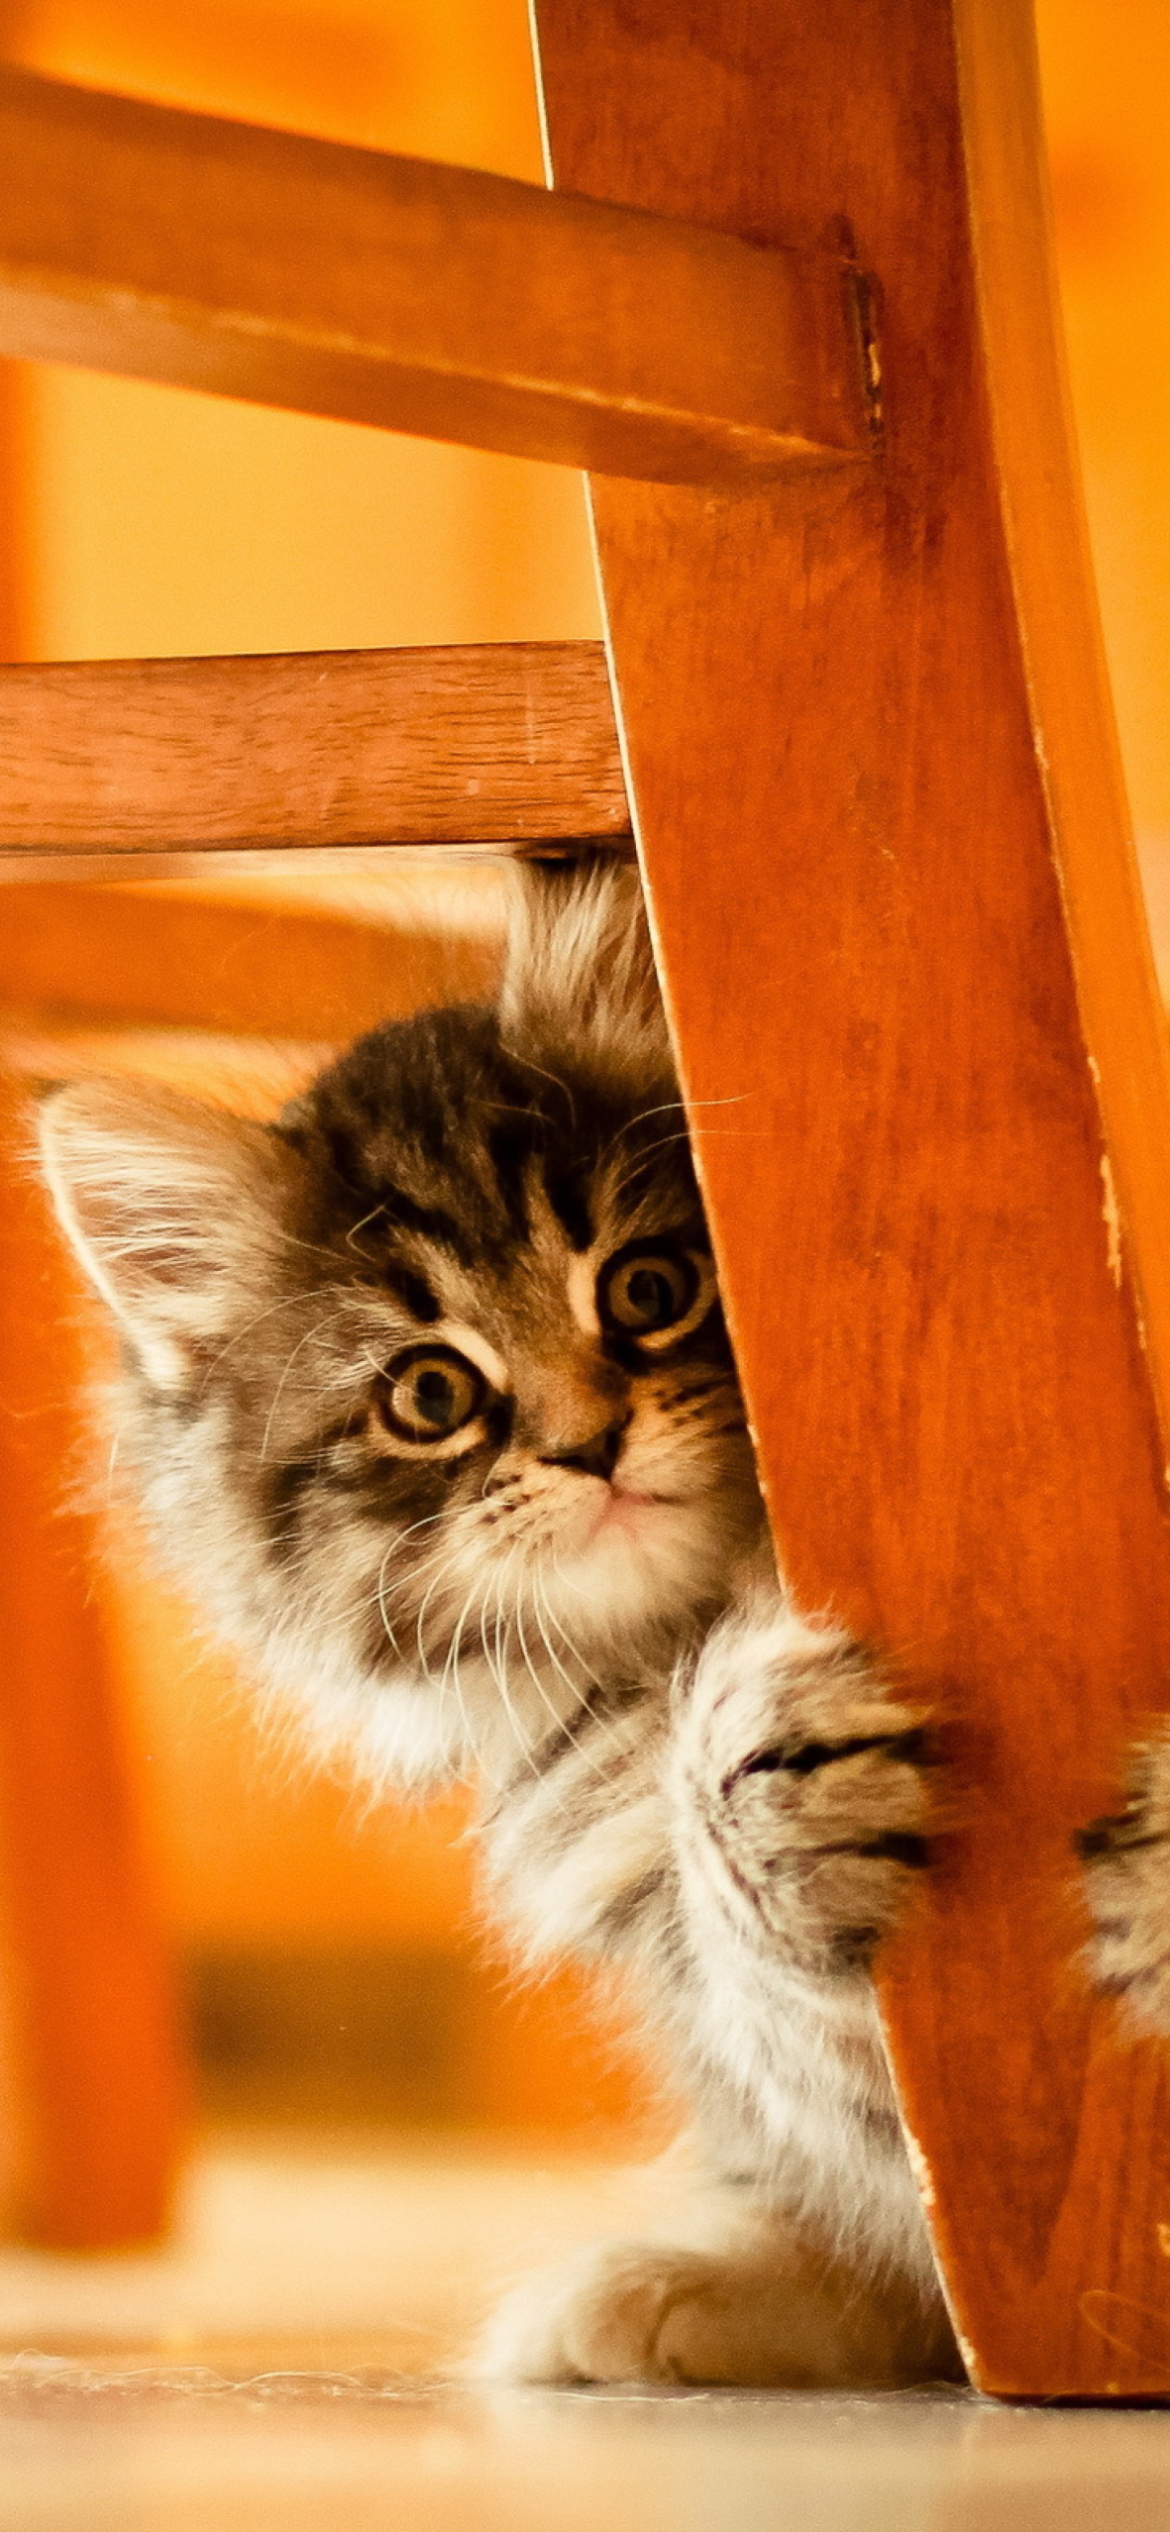 Das Kitten Hiding Behind Chair Leg Wallpaper 1170x2532